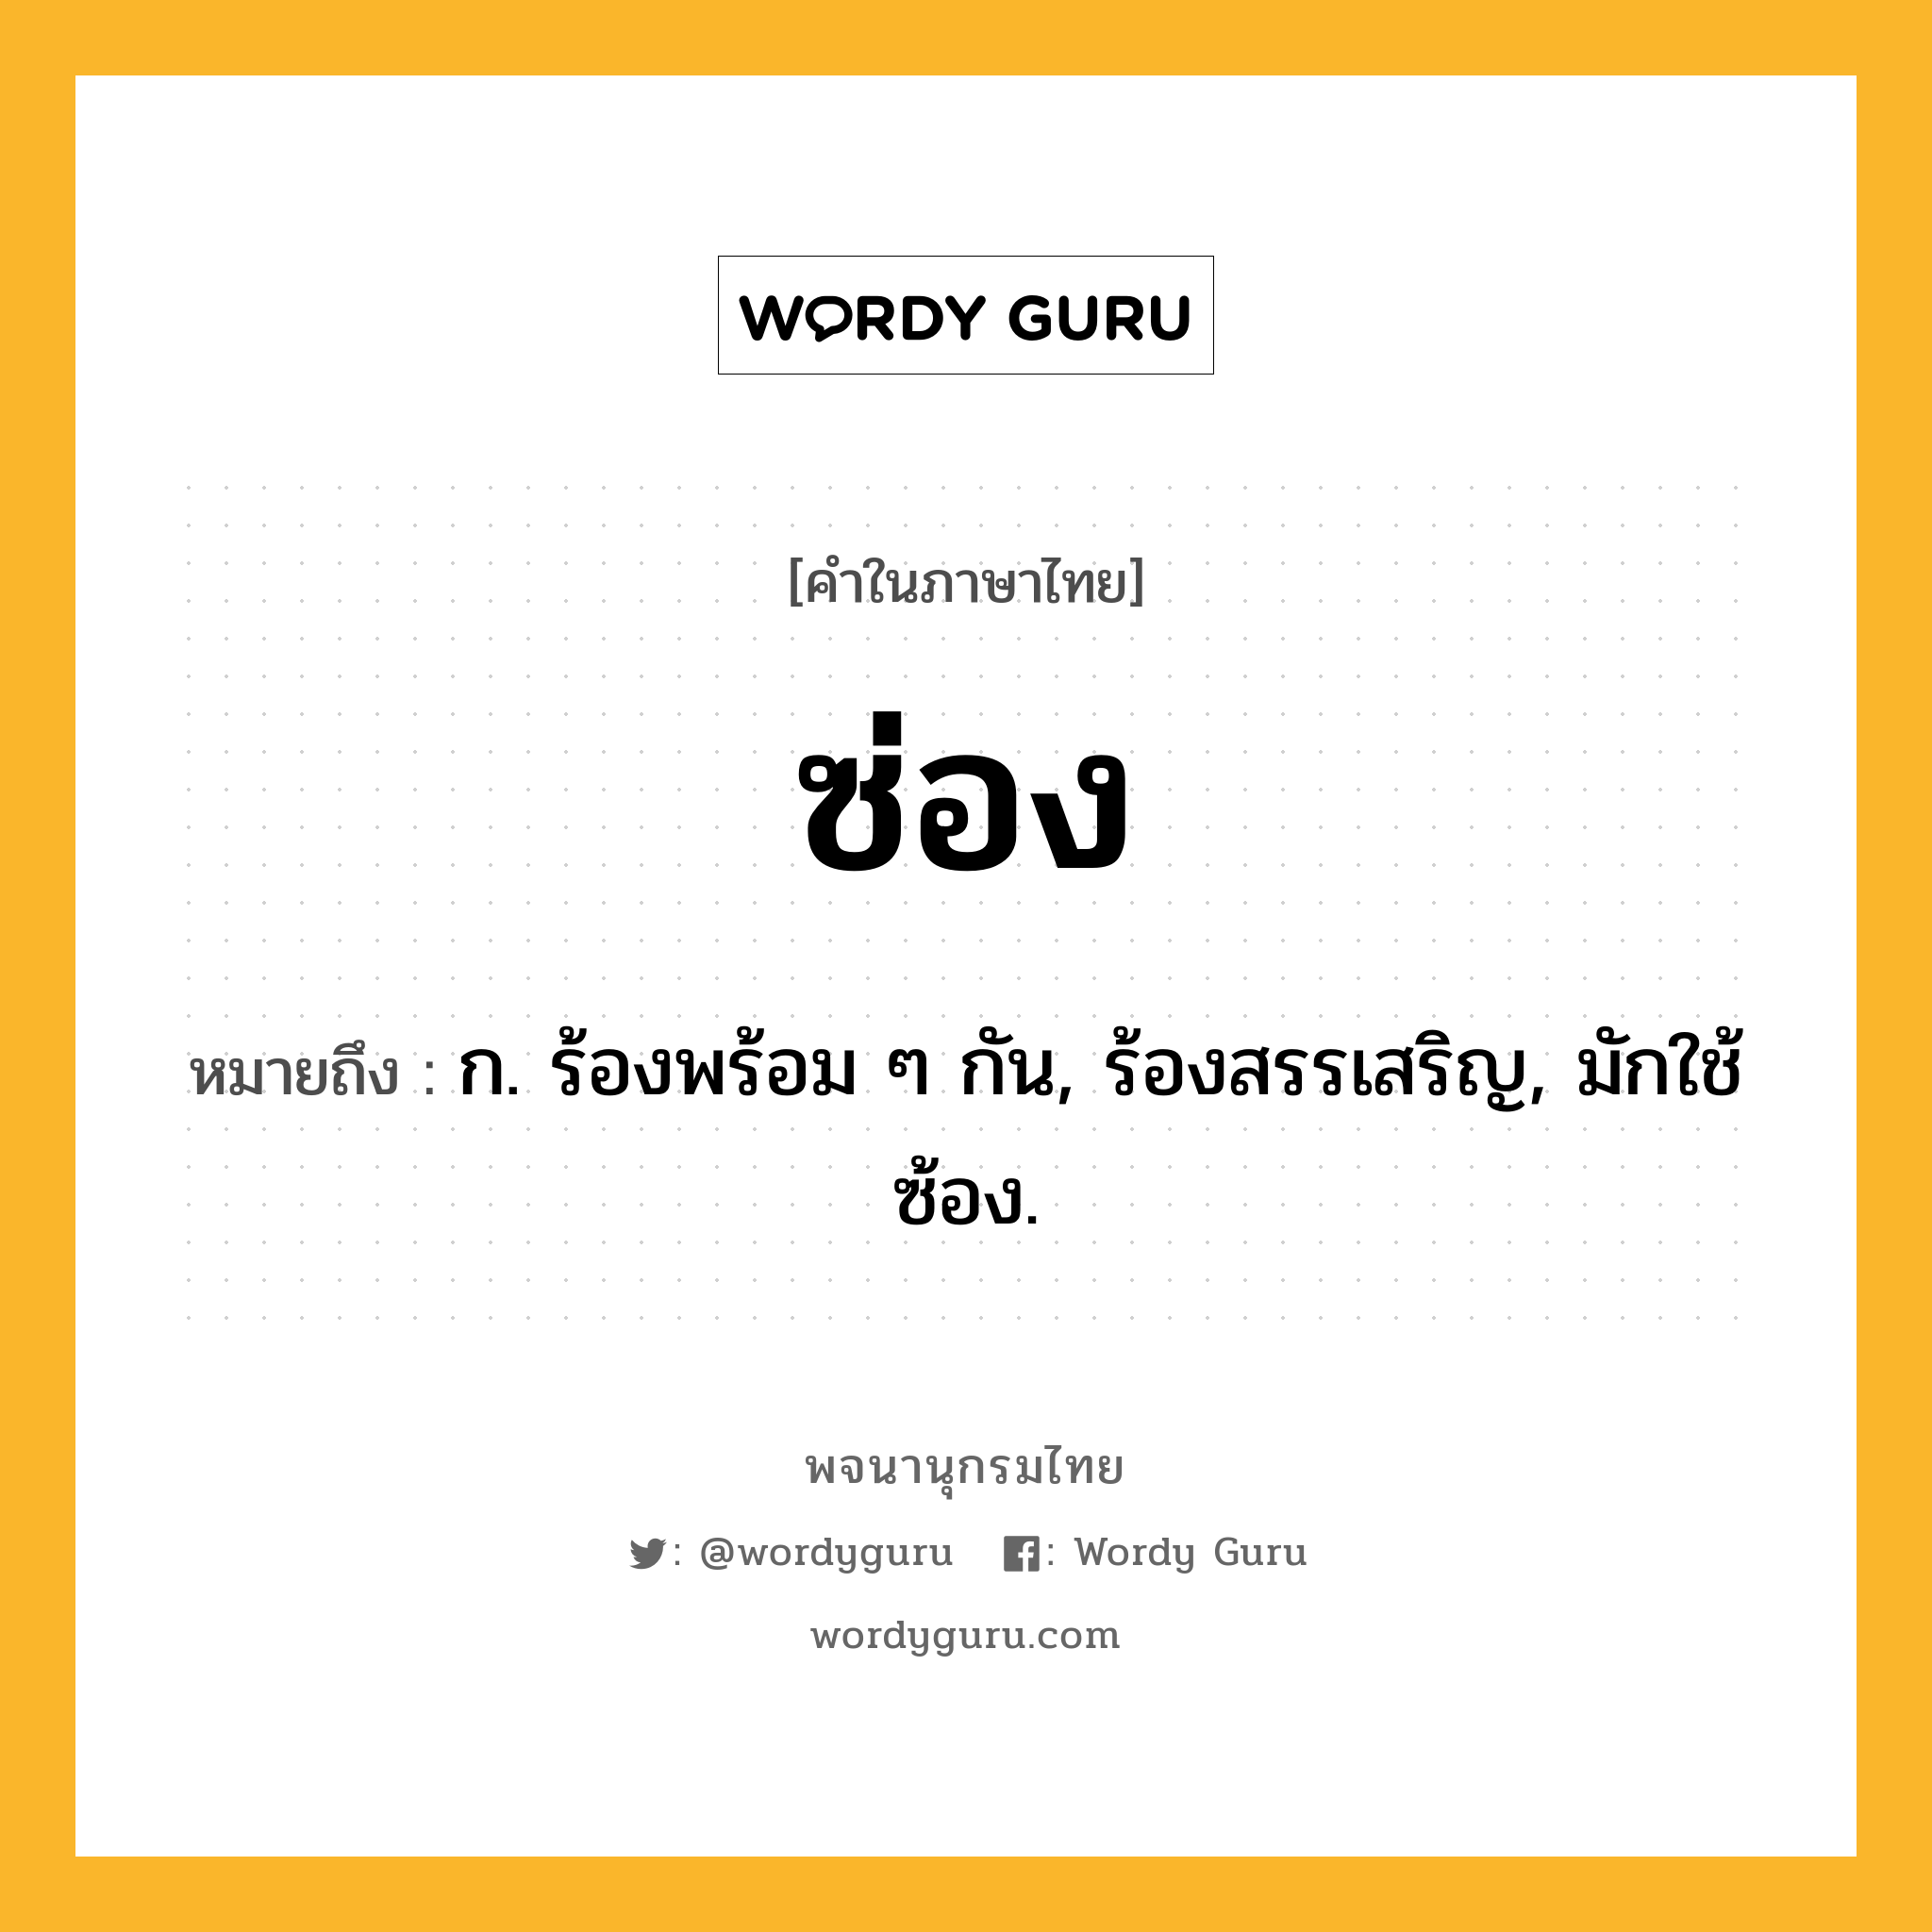 ซ่อง ความหมาย หมายถึงอะไร?, คำในภาษาไทย ซ่อง หมายถึง ก. ร้องพร้อม ๆ กัน, ร้องสรรเสริญ, มักใช้ ซ้อง.